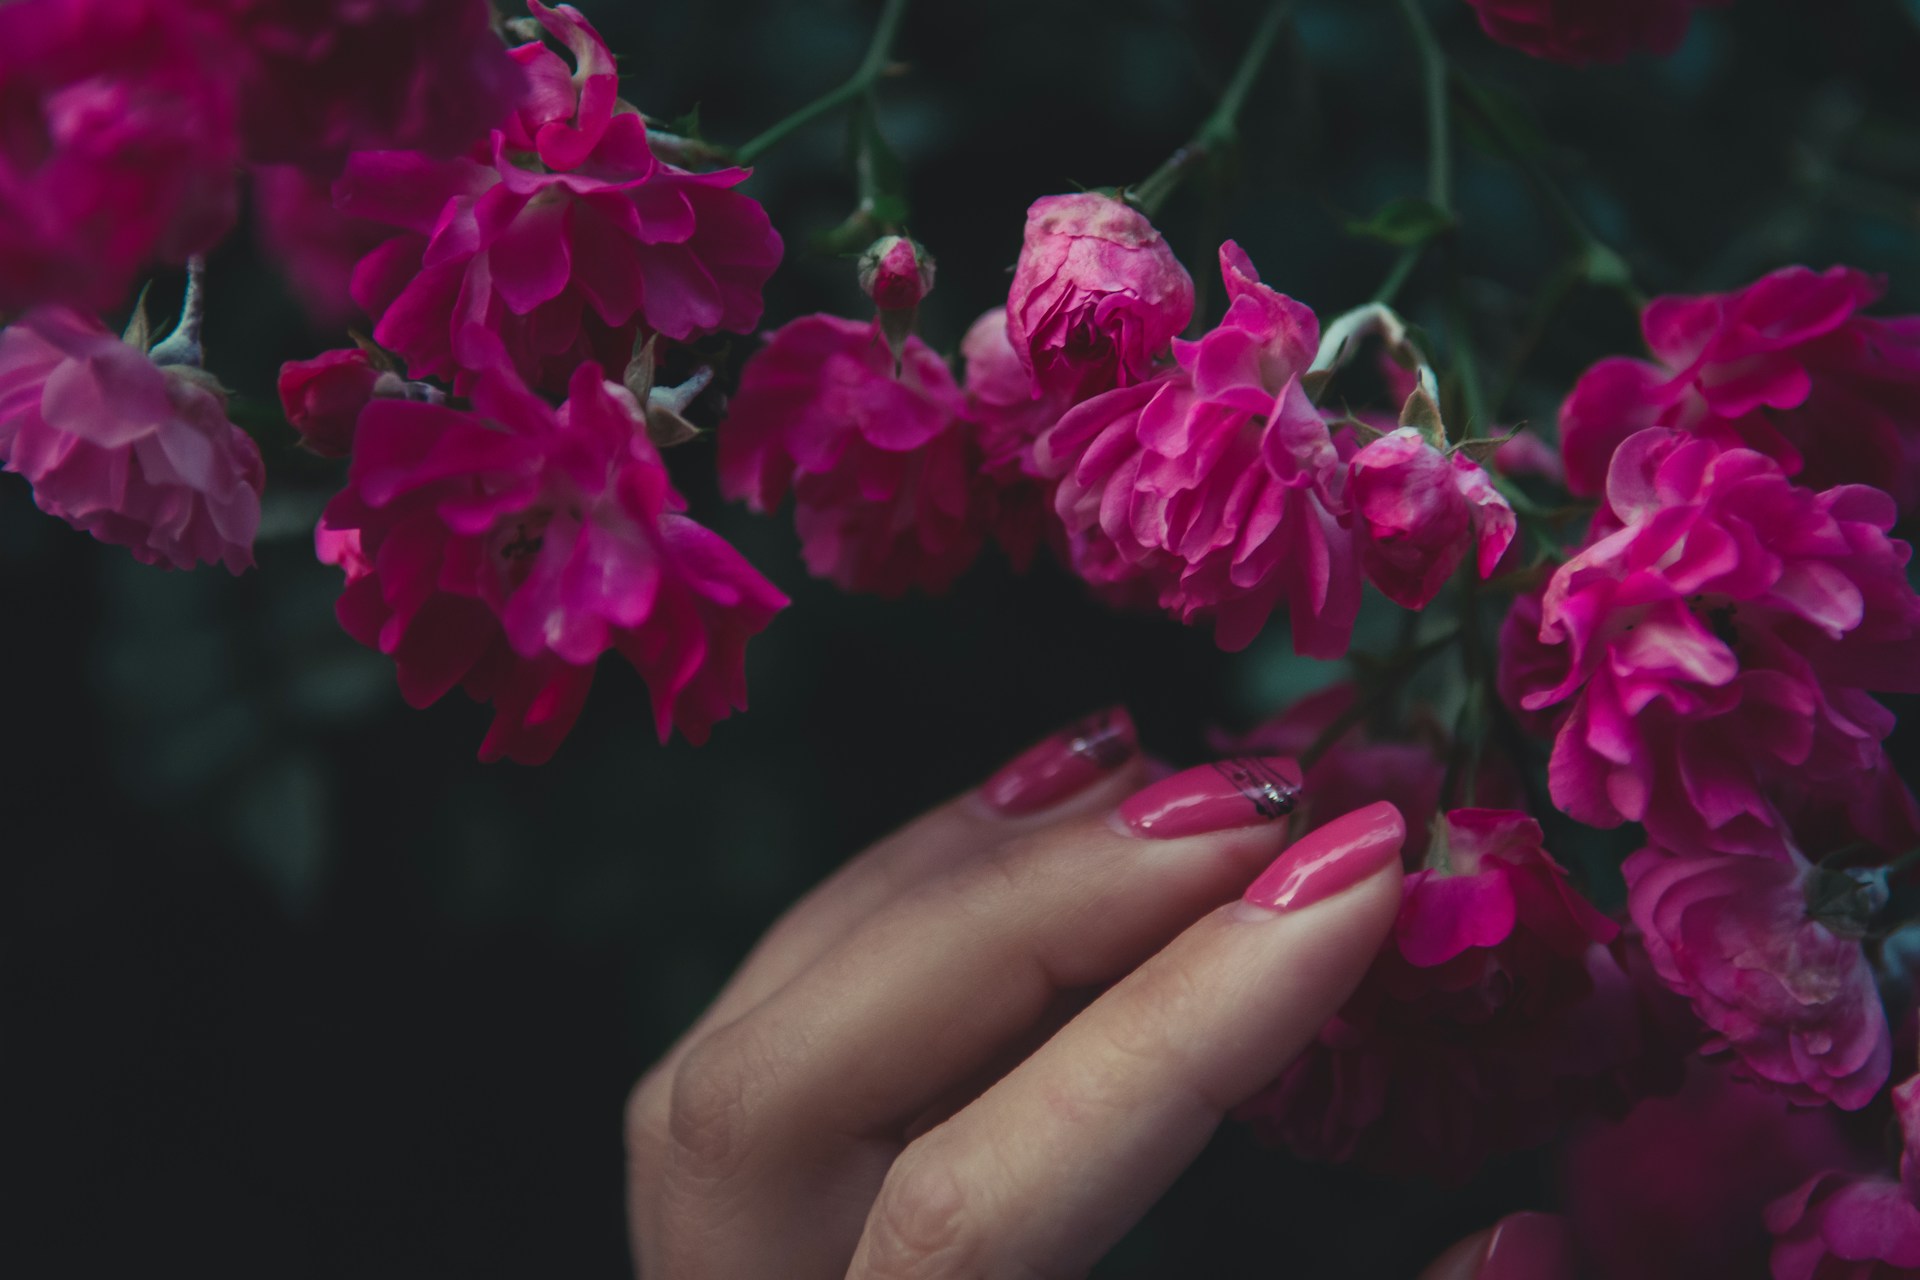 Paznokcie walentynkowe różowe - stylizacje manicure